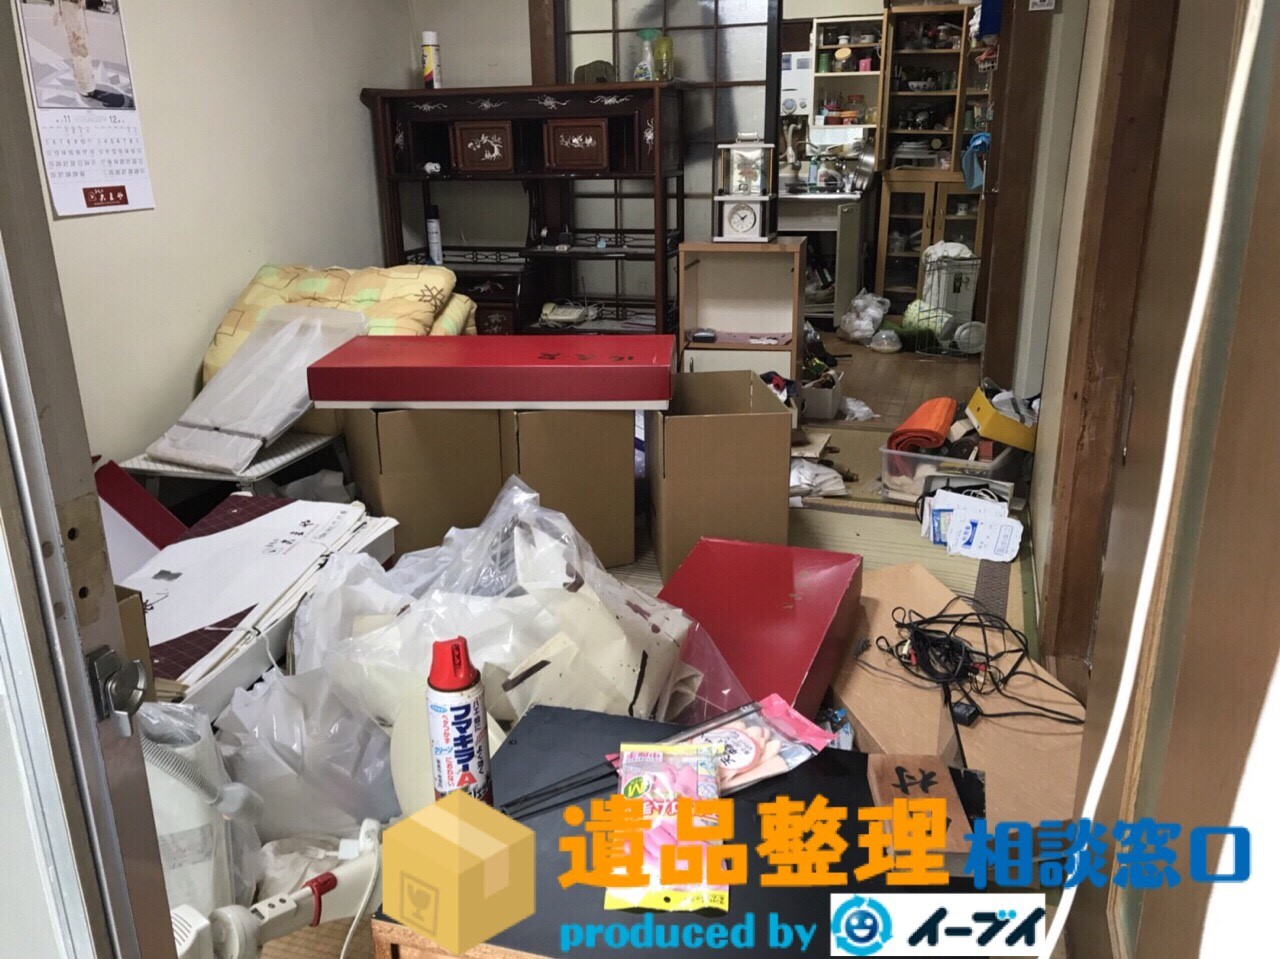 大阪府箕面市で遺品整理の依頼で部屋の家財処分をしました。のアイキャッチ